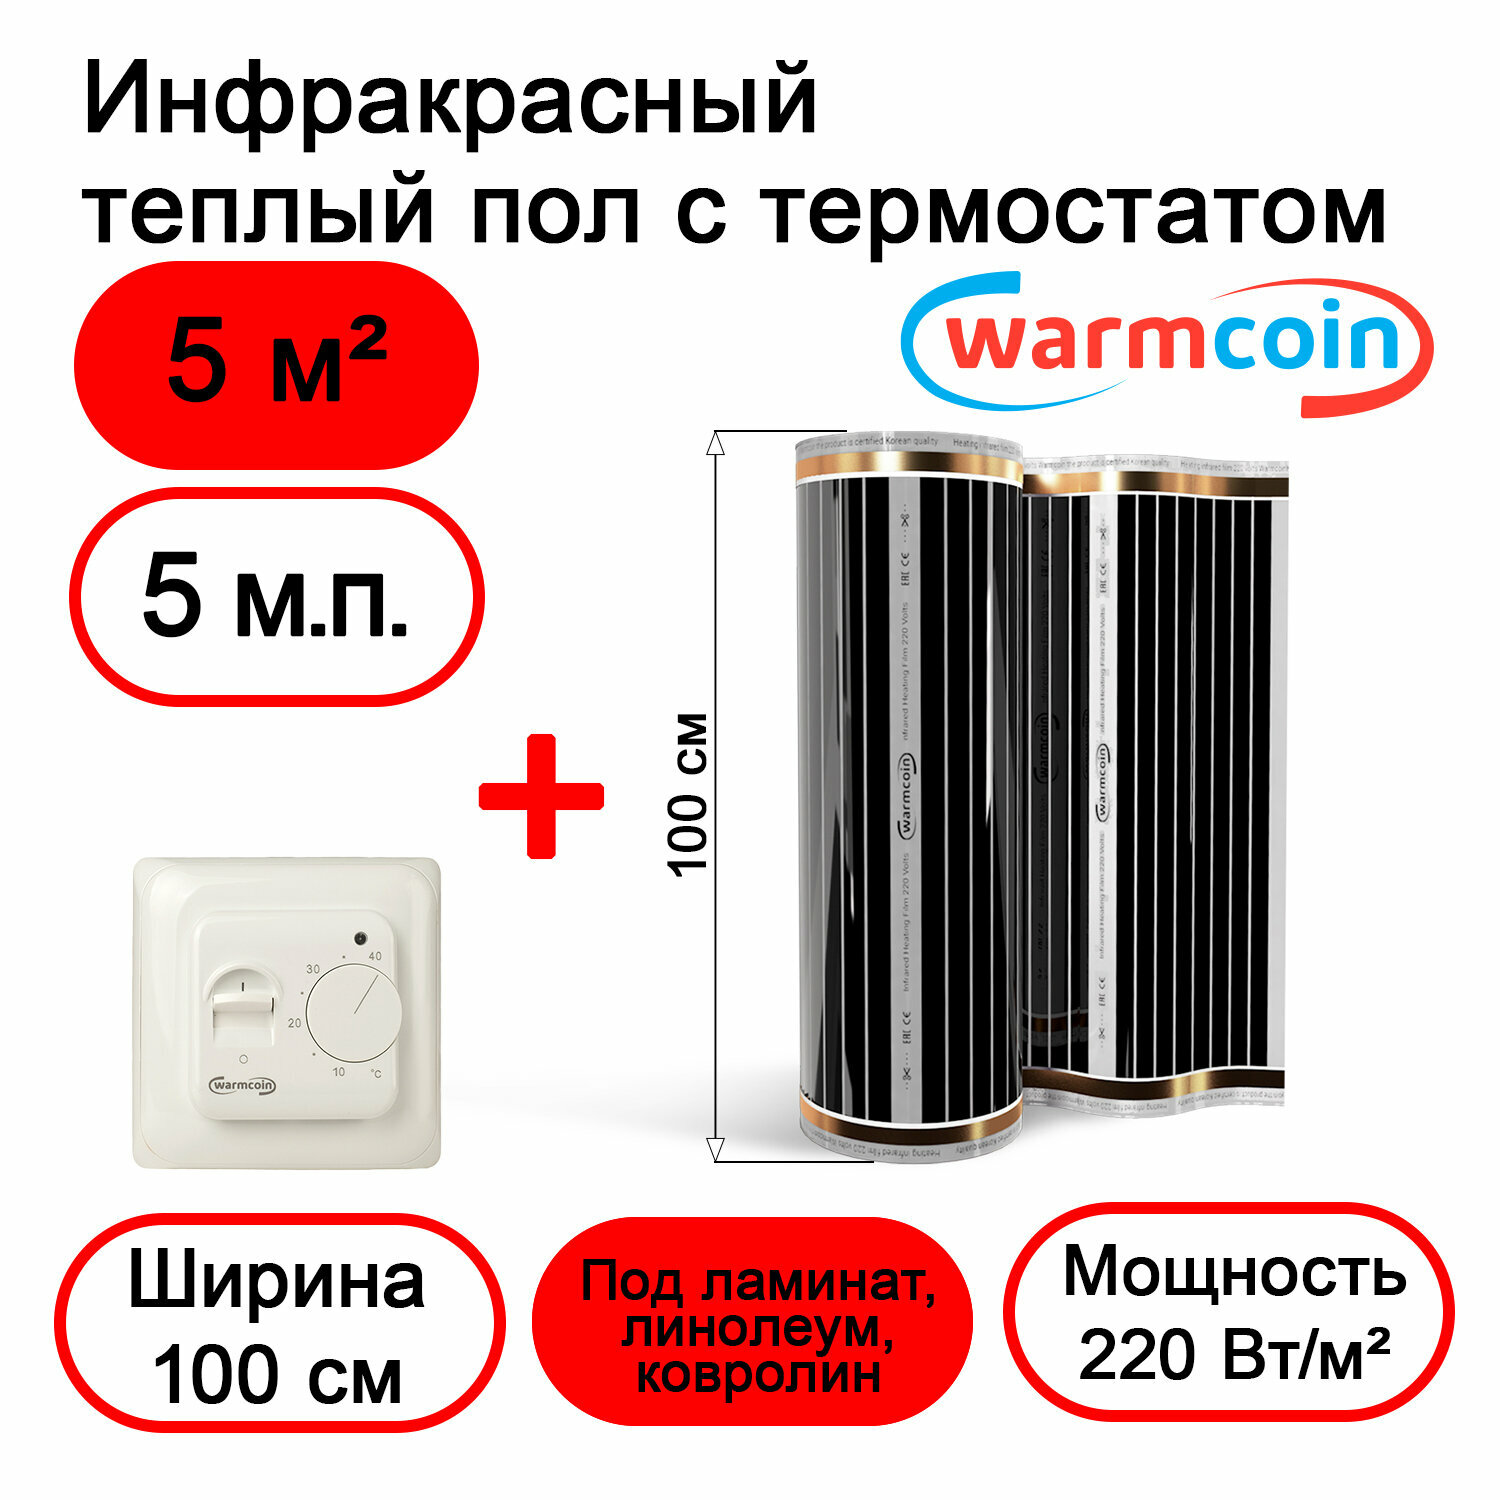 Теплый пол Warmcoin инфракрасный 100см, 220 Вт/м.кв. с механическим терморегулятором, 5 м.п